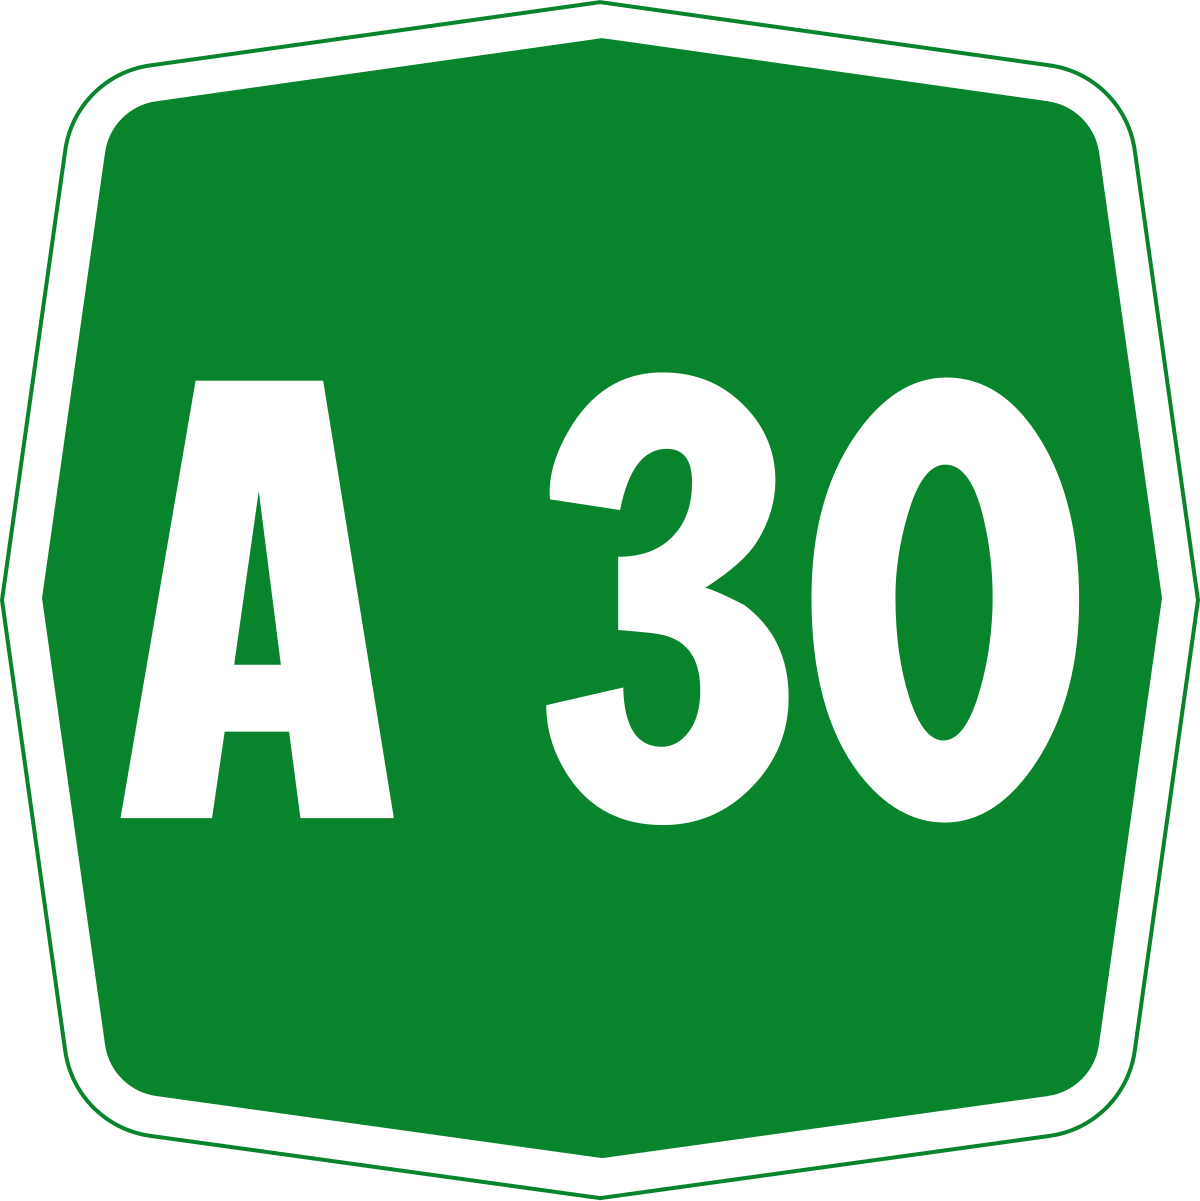 File:Autostrada A30 Italia.svg - Wikipedia